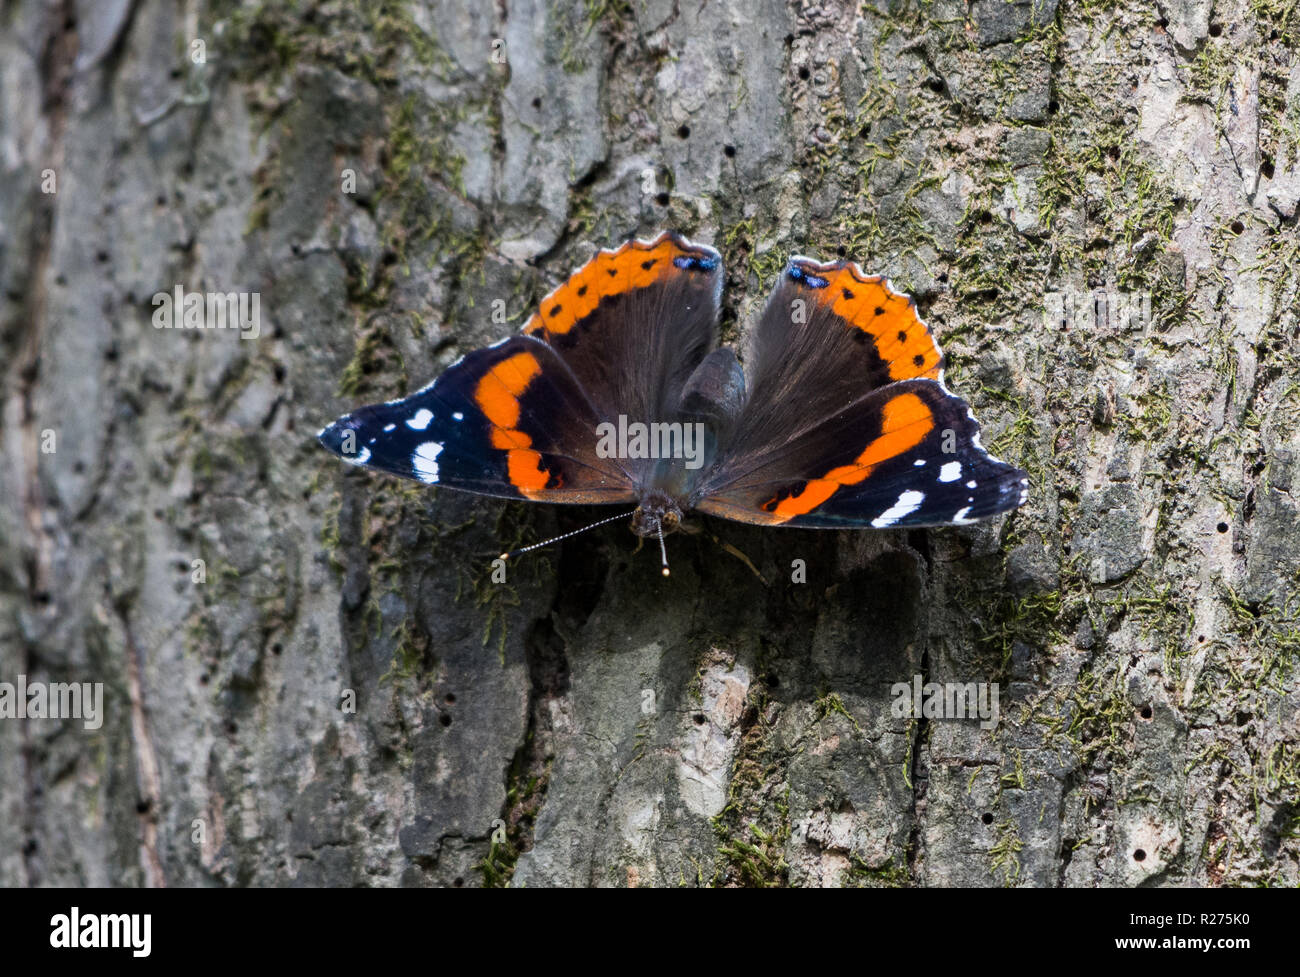 Un almirante rojo butterfly (Vanessa Atalanta) sobre el tronco de un árbol. Houston, Texas, EE.UU. Foto de stock